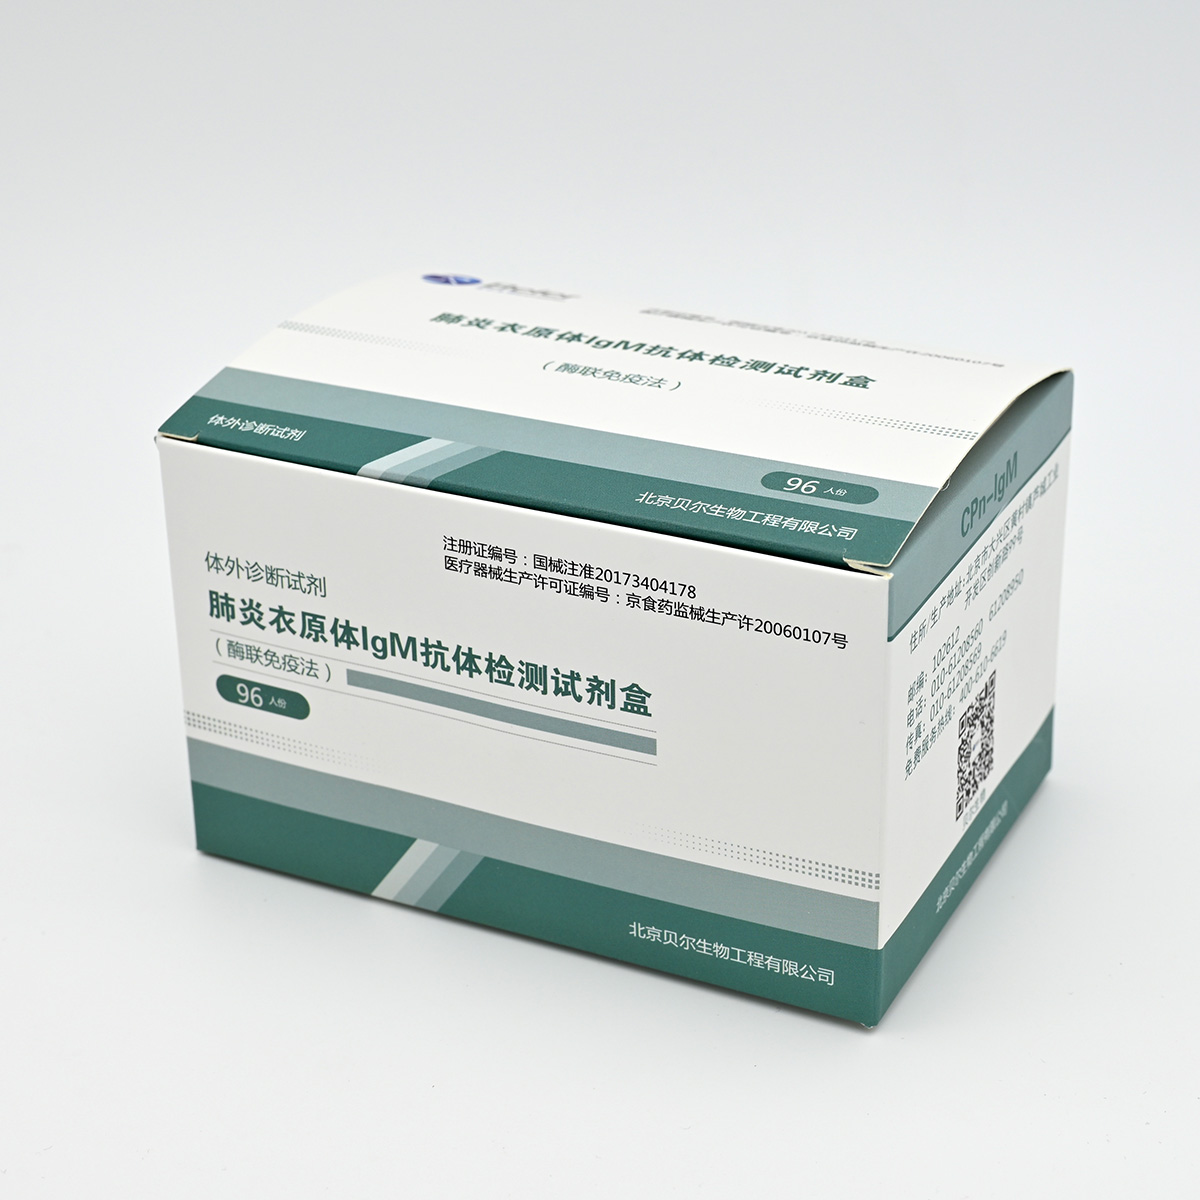 【贝尔】肺炎衣原体IgM抗体检测试剂盒(酶联免疫法)